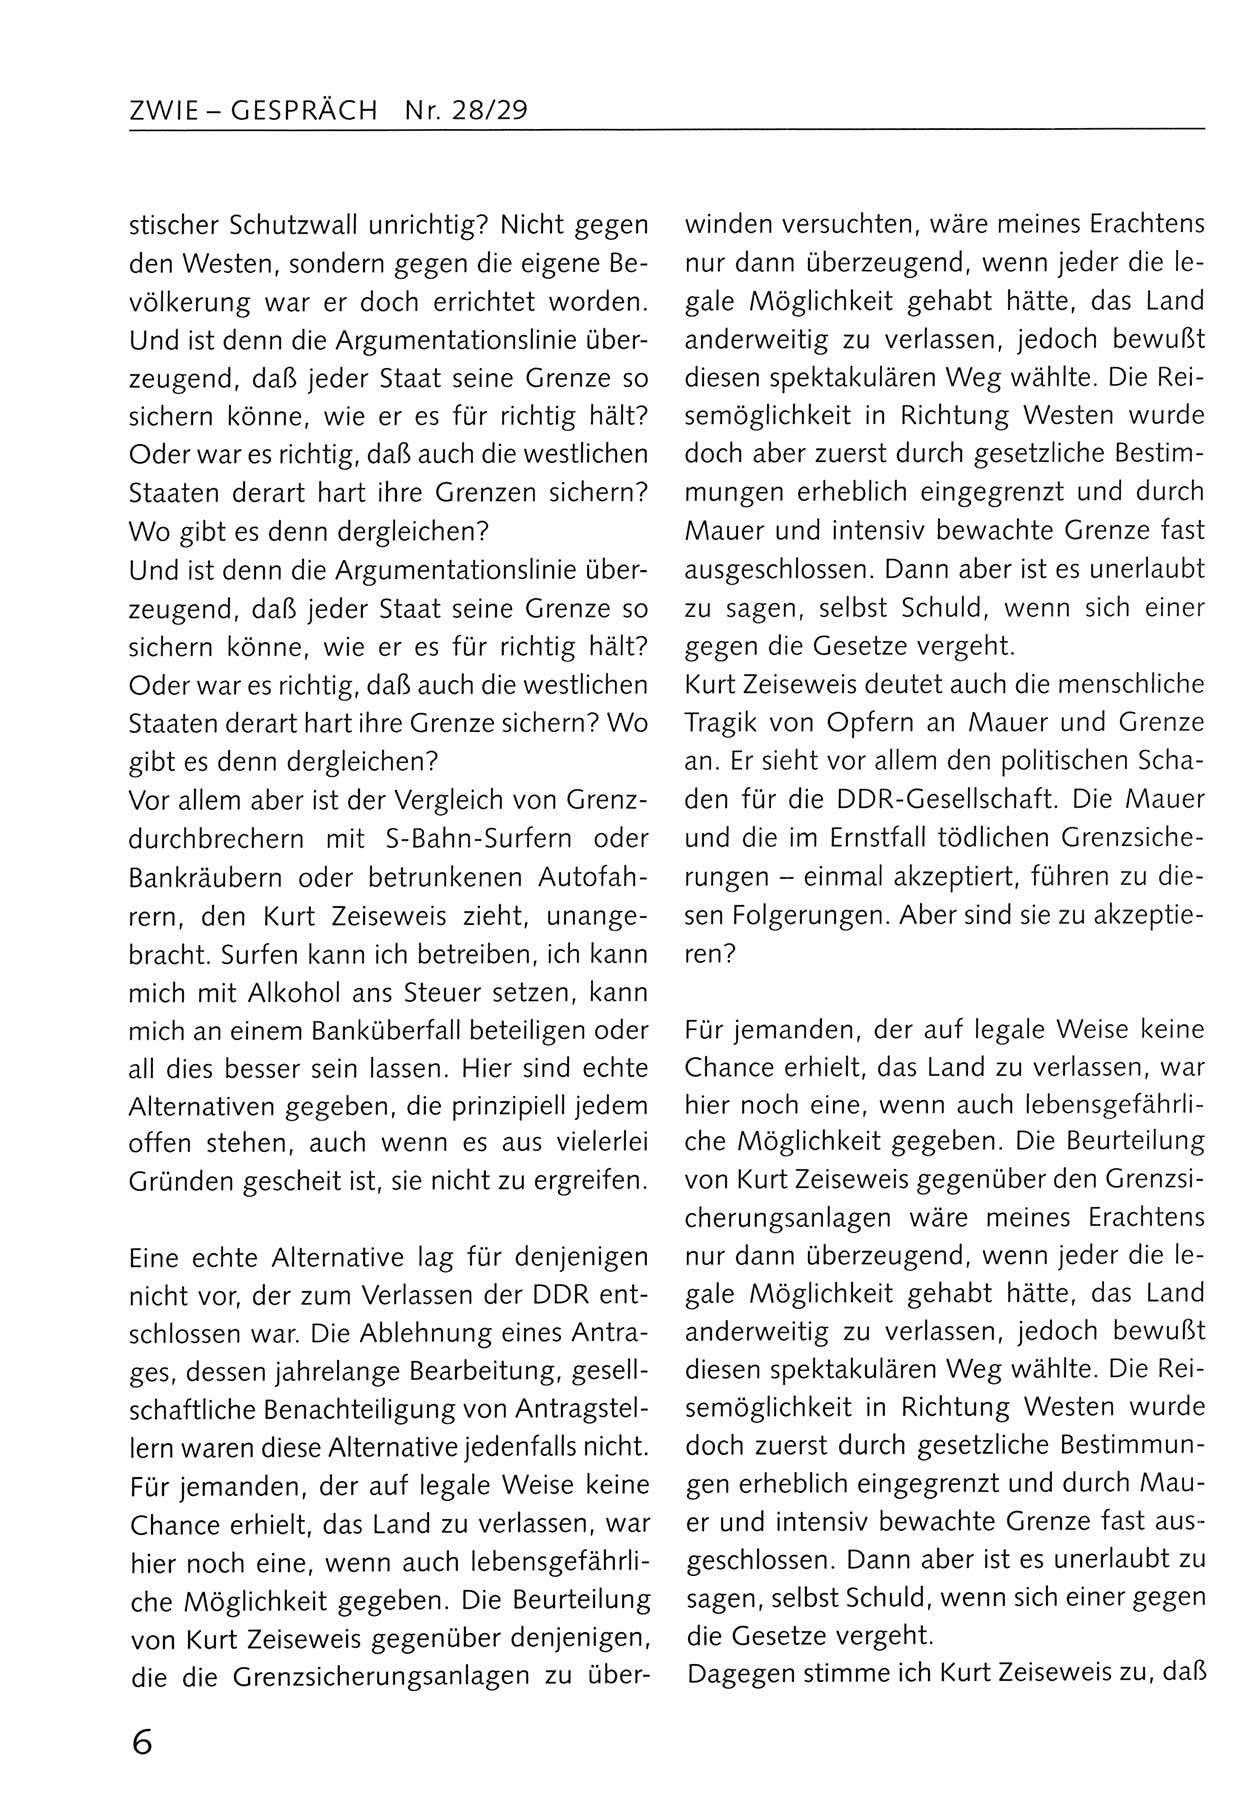 Zwie-Gespräch, Beiträge zum Umgang mit der Staatssicherheits-Vergangenheit [Deutsche Demokratische Republik (DDR)], Ausgabe Nr. 28/29, Berlin 1995, Seite 6 (Zwie-Gespr. Ausg. 28/29 1995, S. 6)